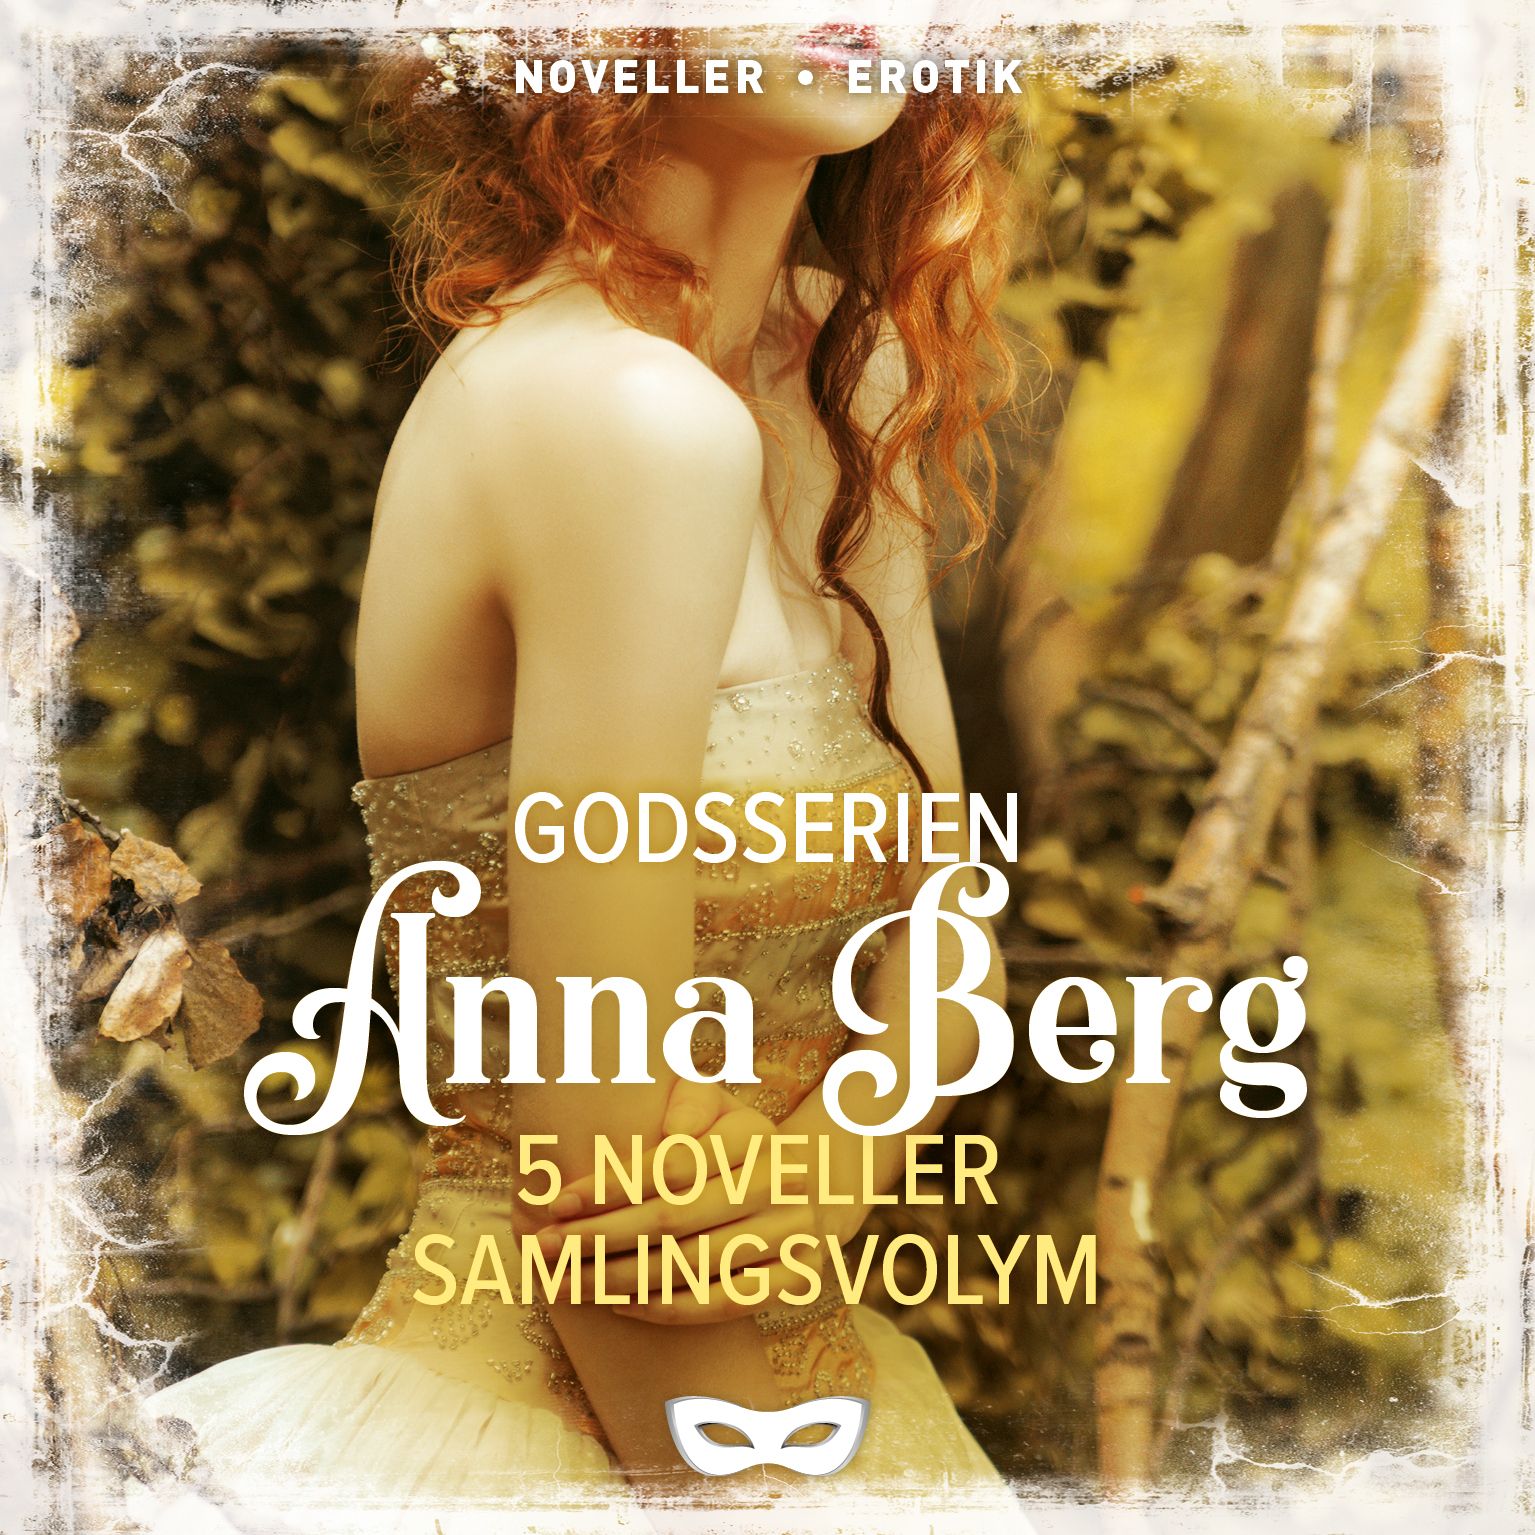 Godsserien 5 noveller Samlingsvolym, ljudbok av Anna Berg